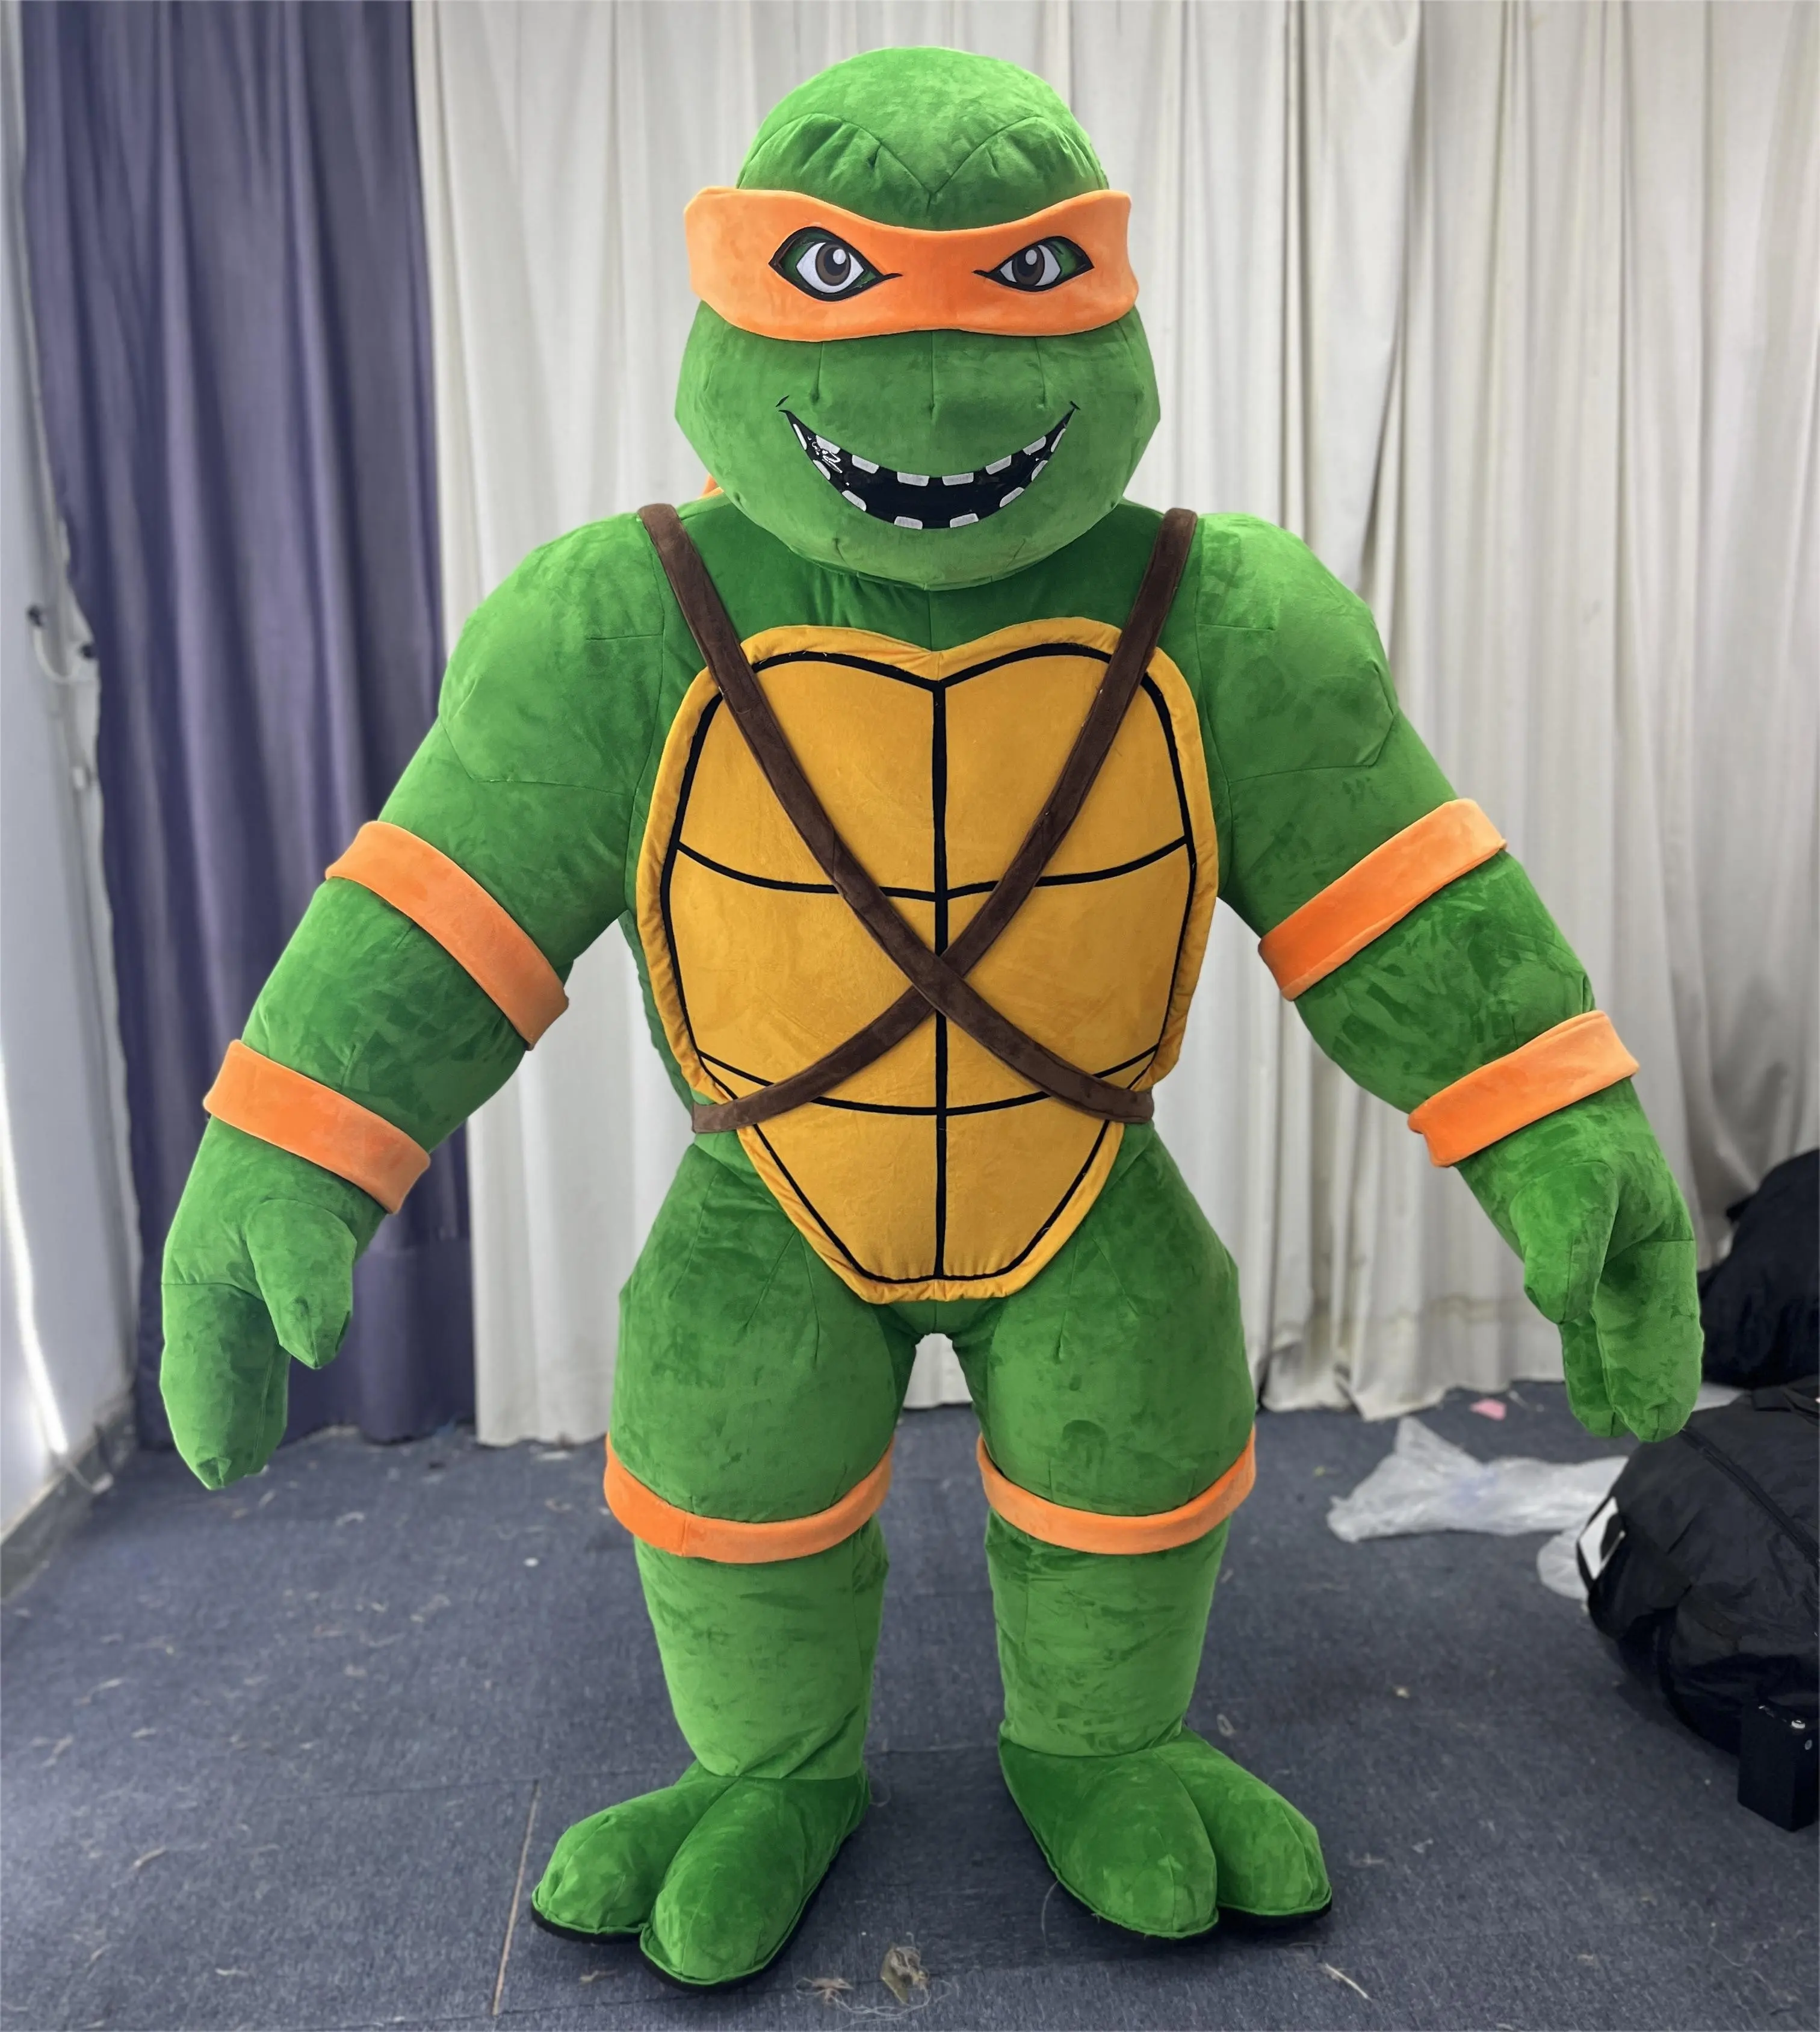 Funtoys MOQ 1 pieza mascota de tortuga inflable de felpa personalizada personaje de dibujos animados mascota Ninja tortuga mascota inflable disfraz